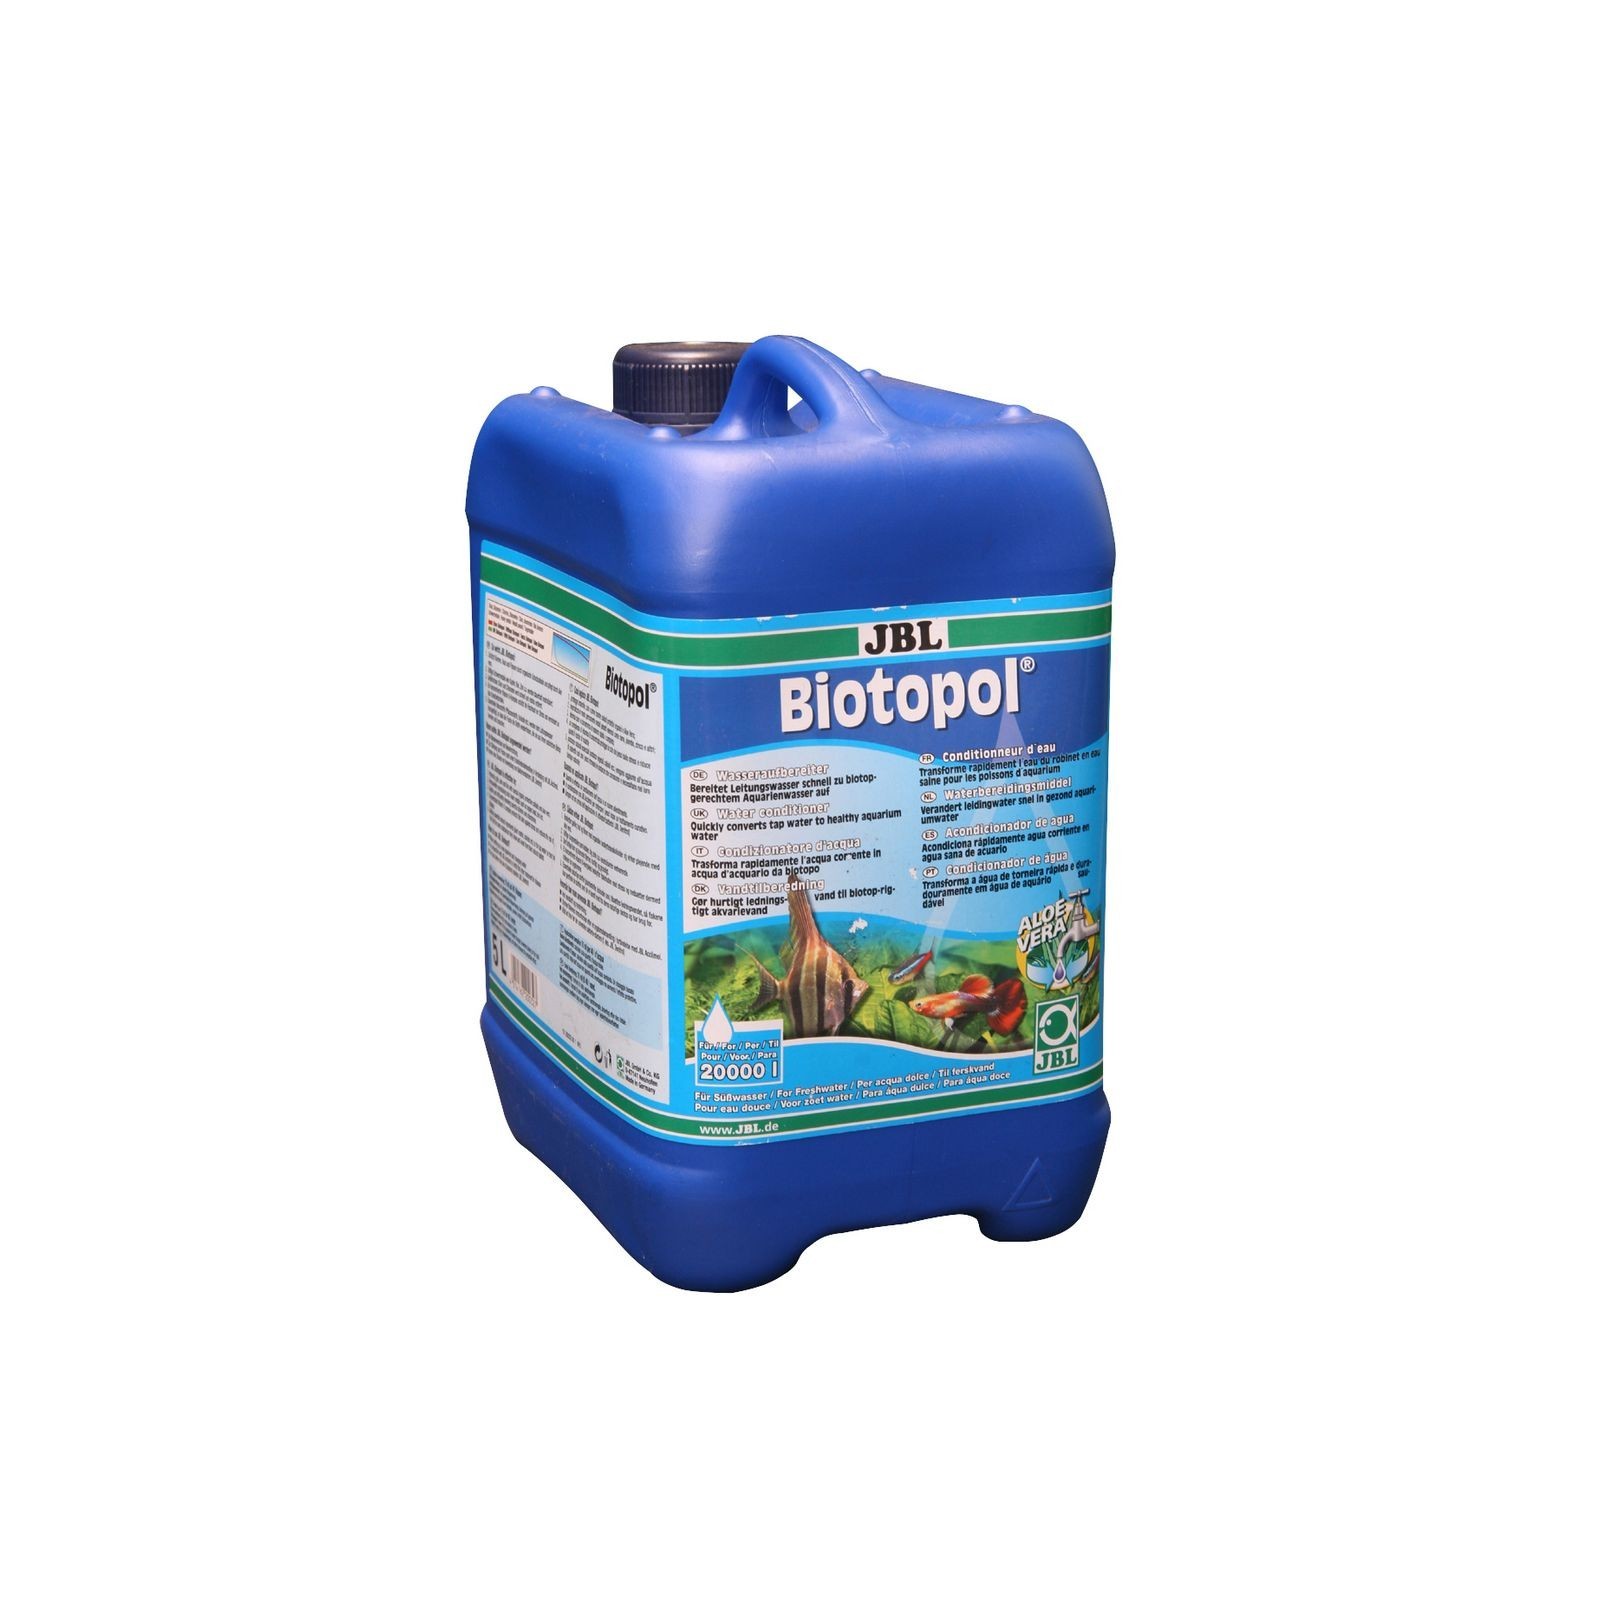 JBL Biotopol biocondizionatore d'acqua confezione allevatori 5000ml per 20000lt